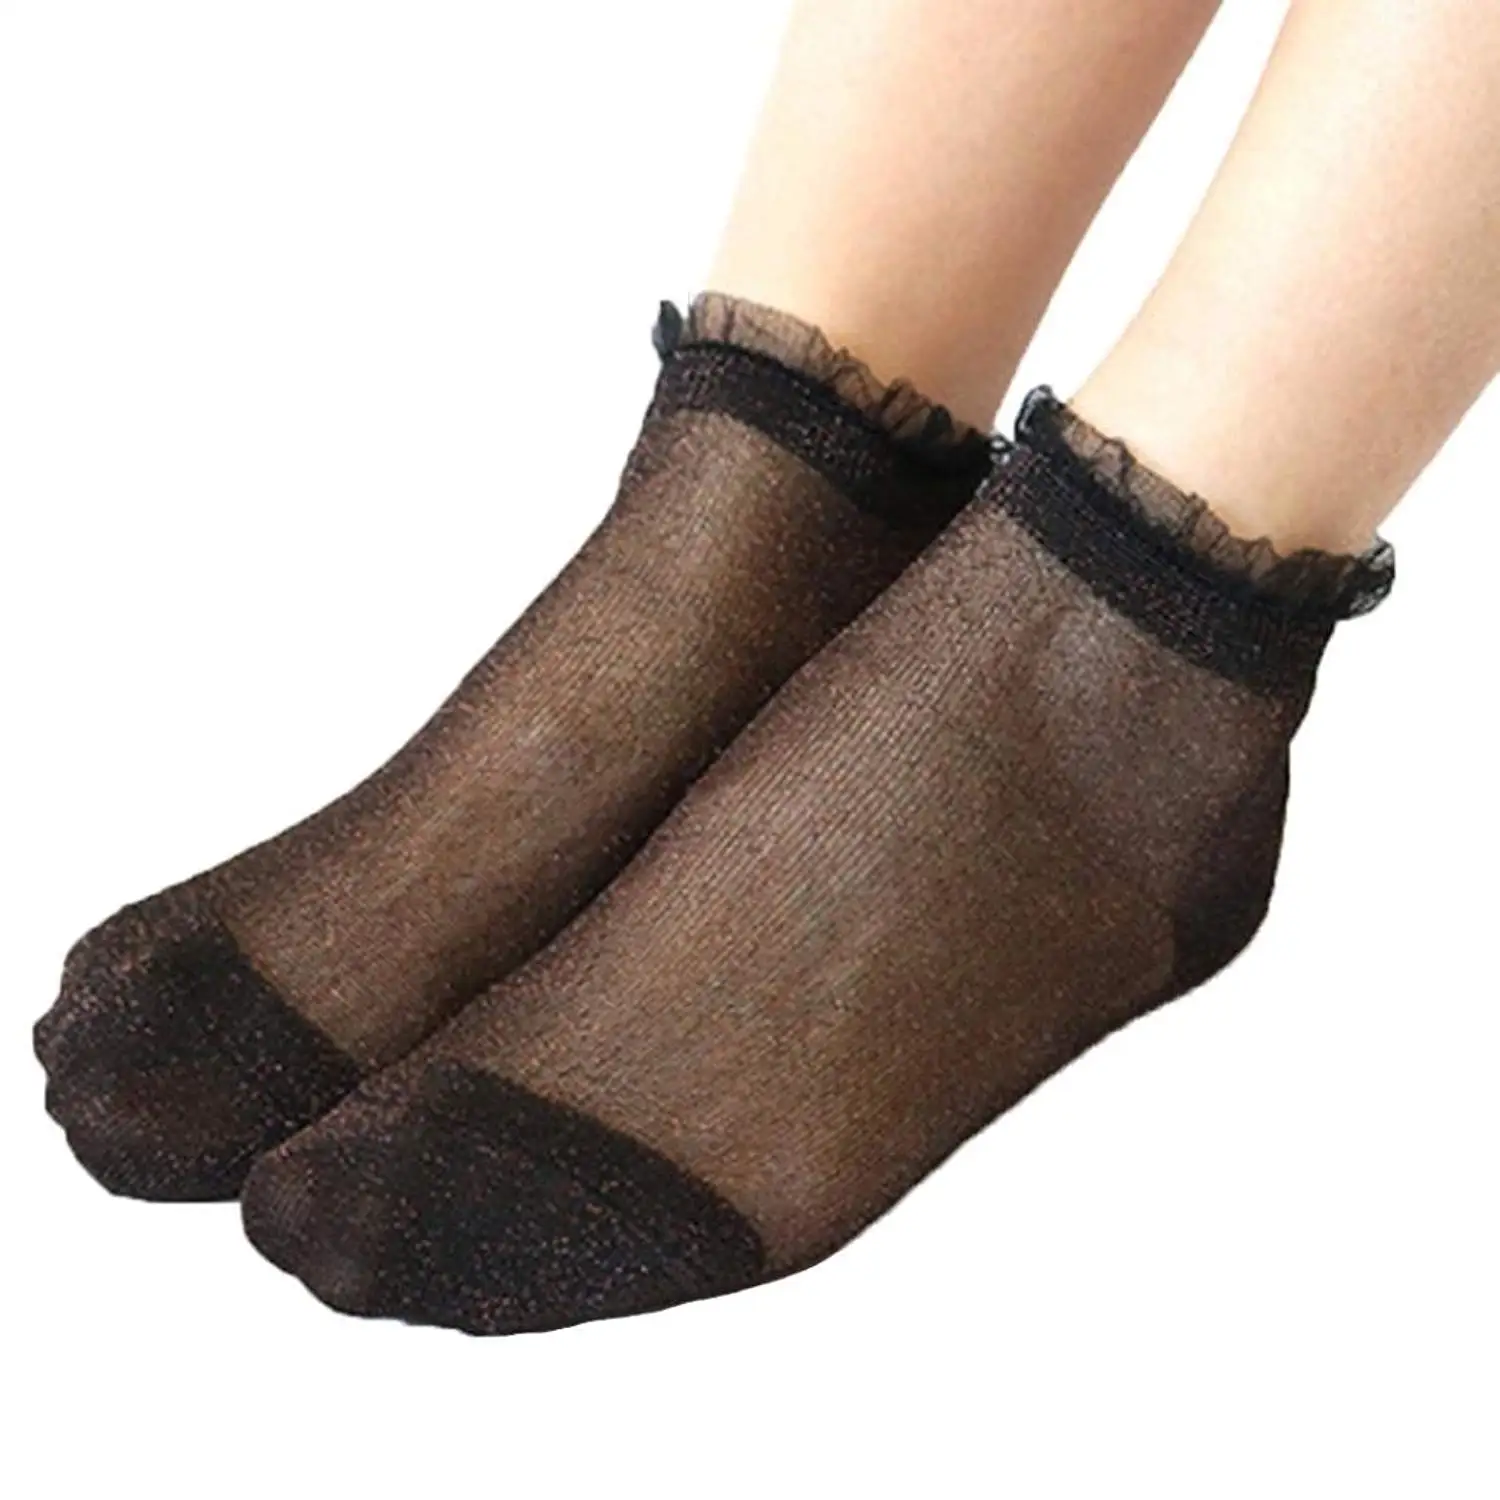 stockings for short women